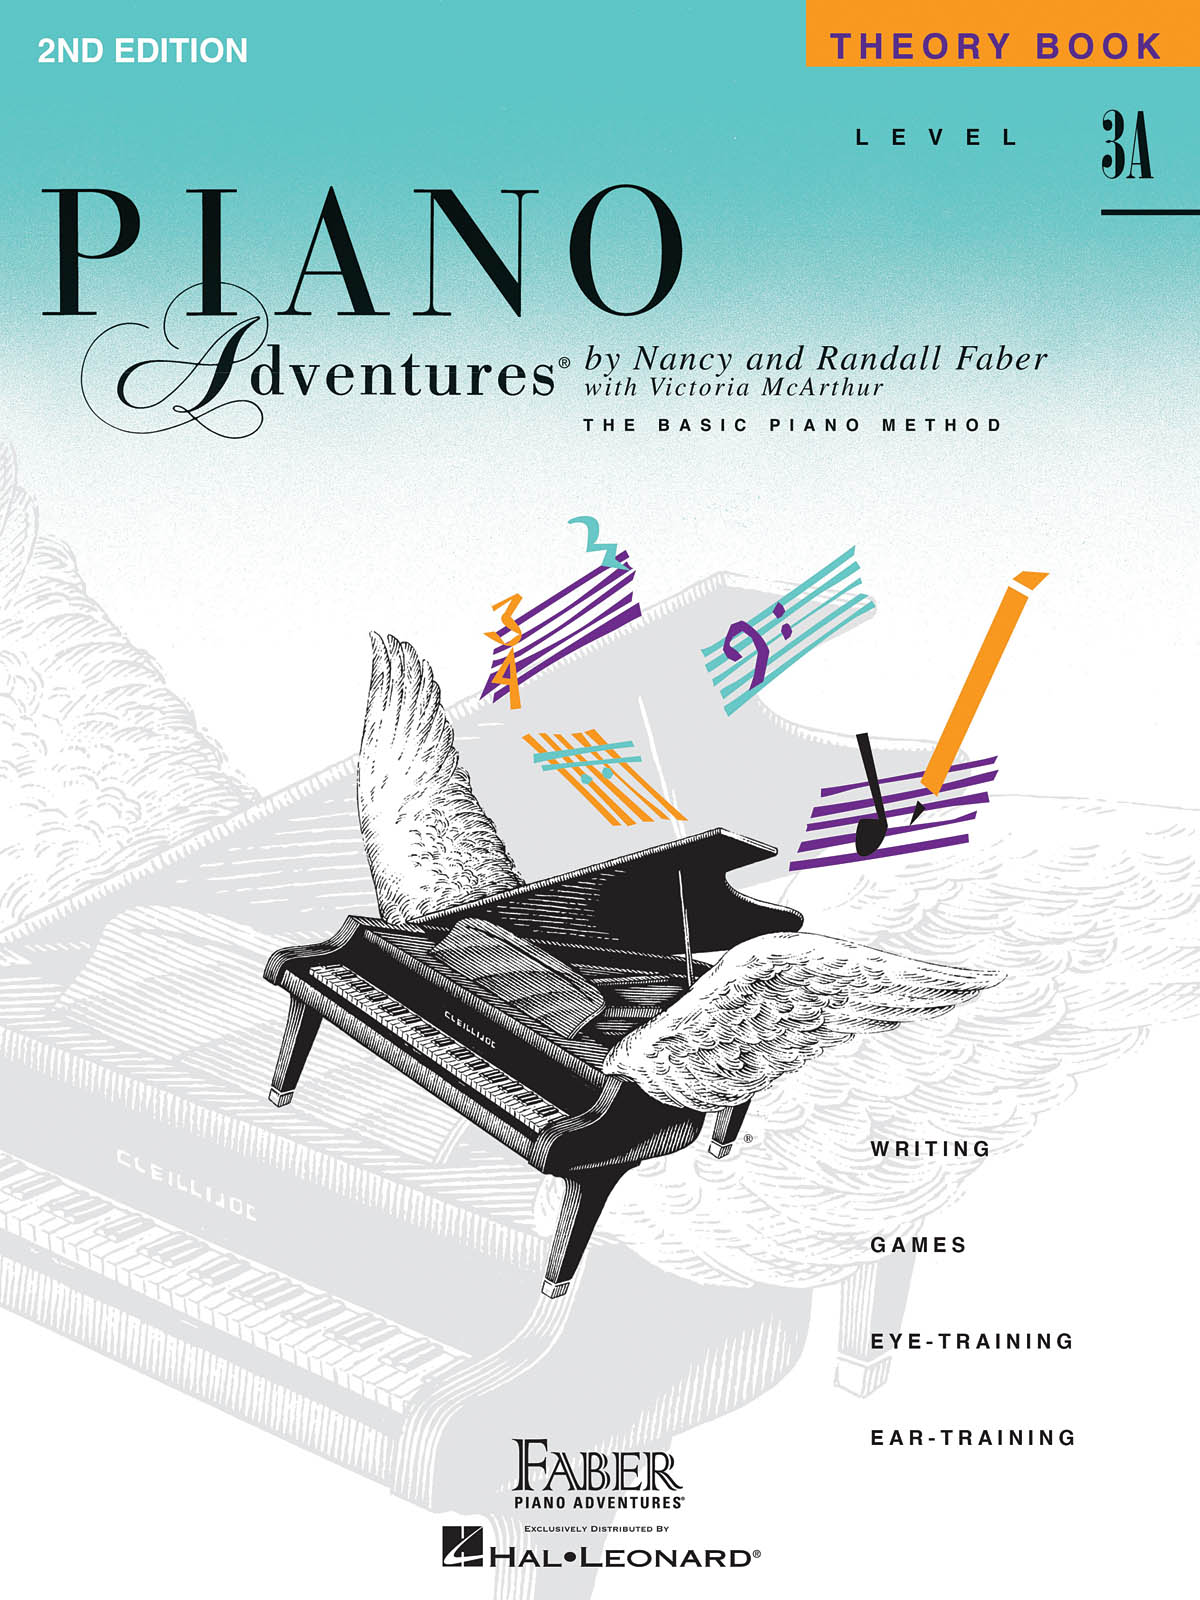 Piano Adventures Level 3A - Theory Book - 2nd Edition - škola hry na klavír